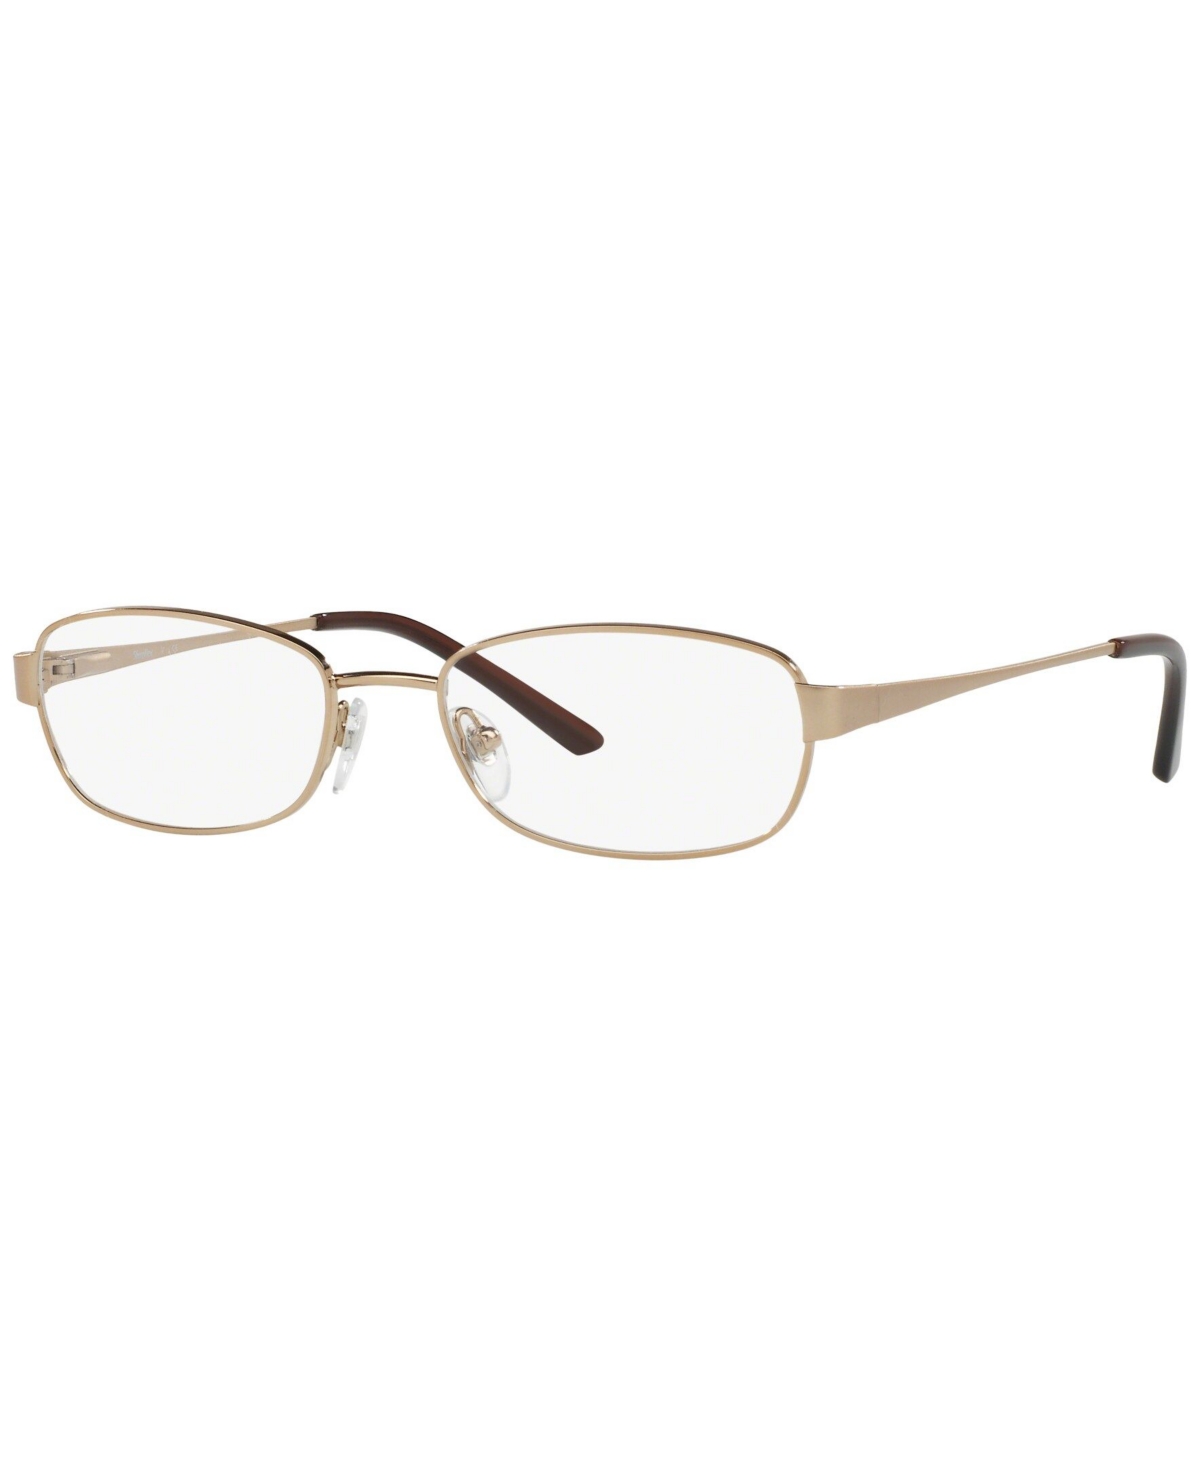 SF2584 Women's Irregular Eyeglasses - Copper